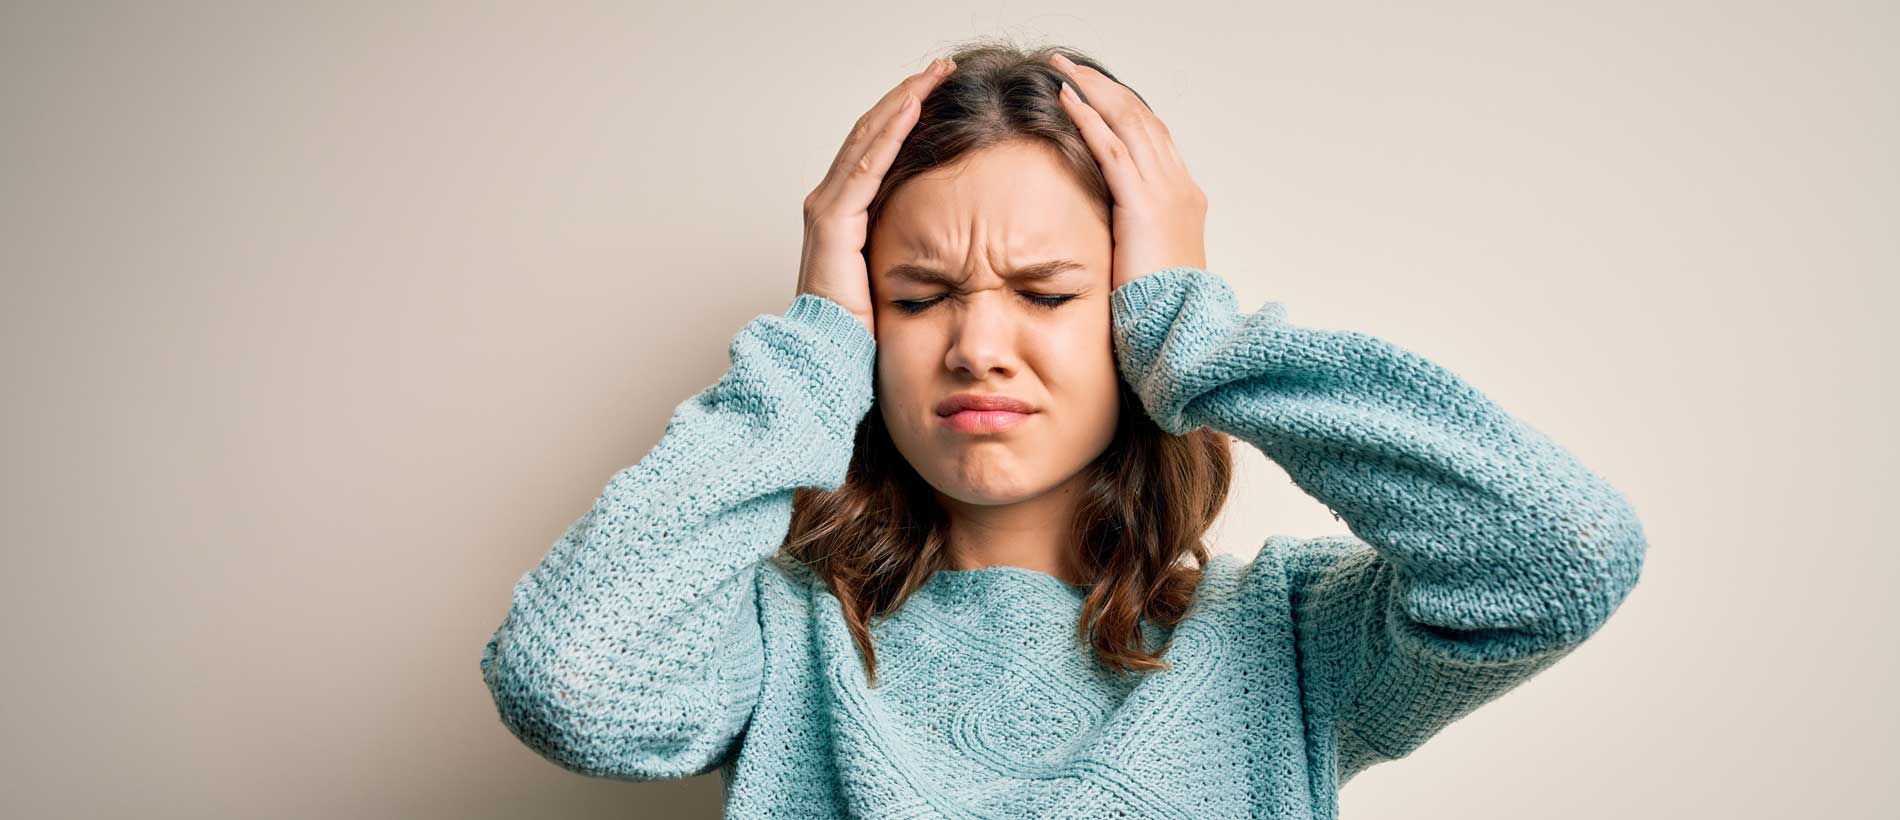 Erhöht eine Migräne das Risiko für einen Schlaganfall?